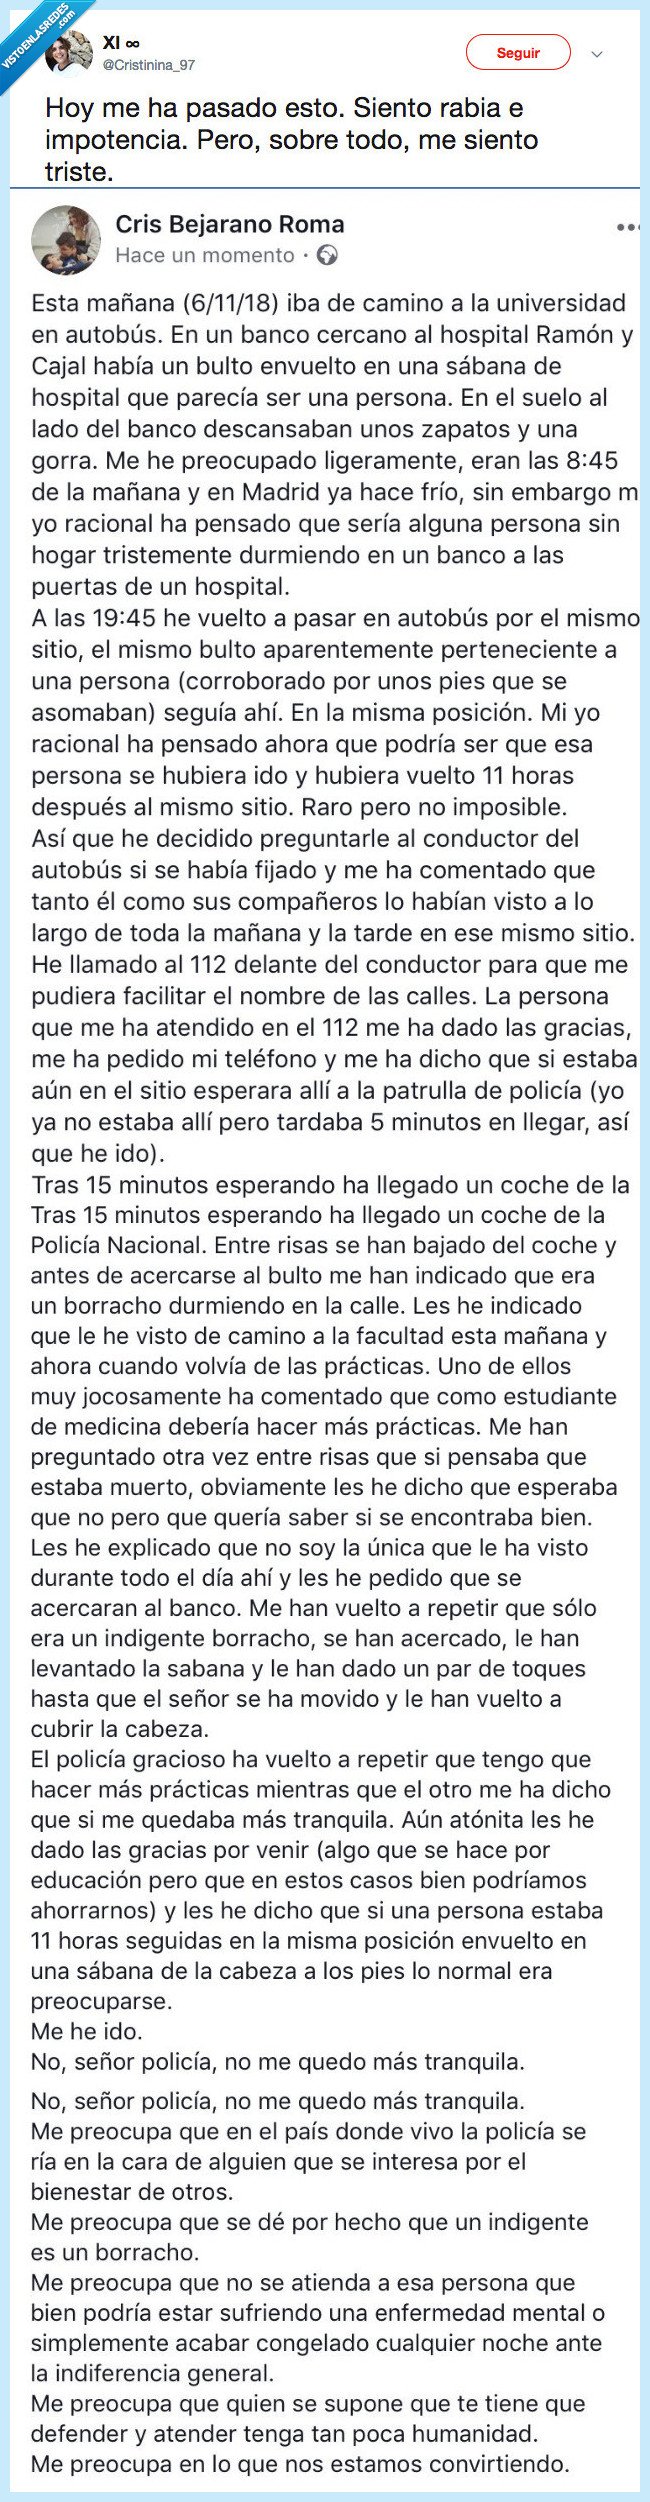 501271 - Una estudiante de medicina denuncia el trato de unos policías hacia un indigente, por @Cristinina_97